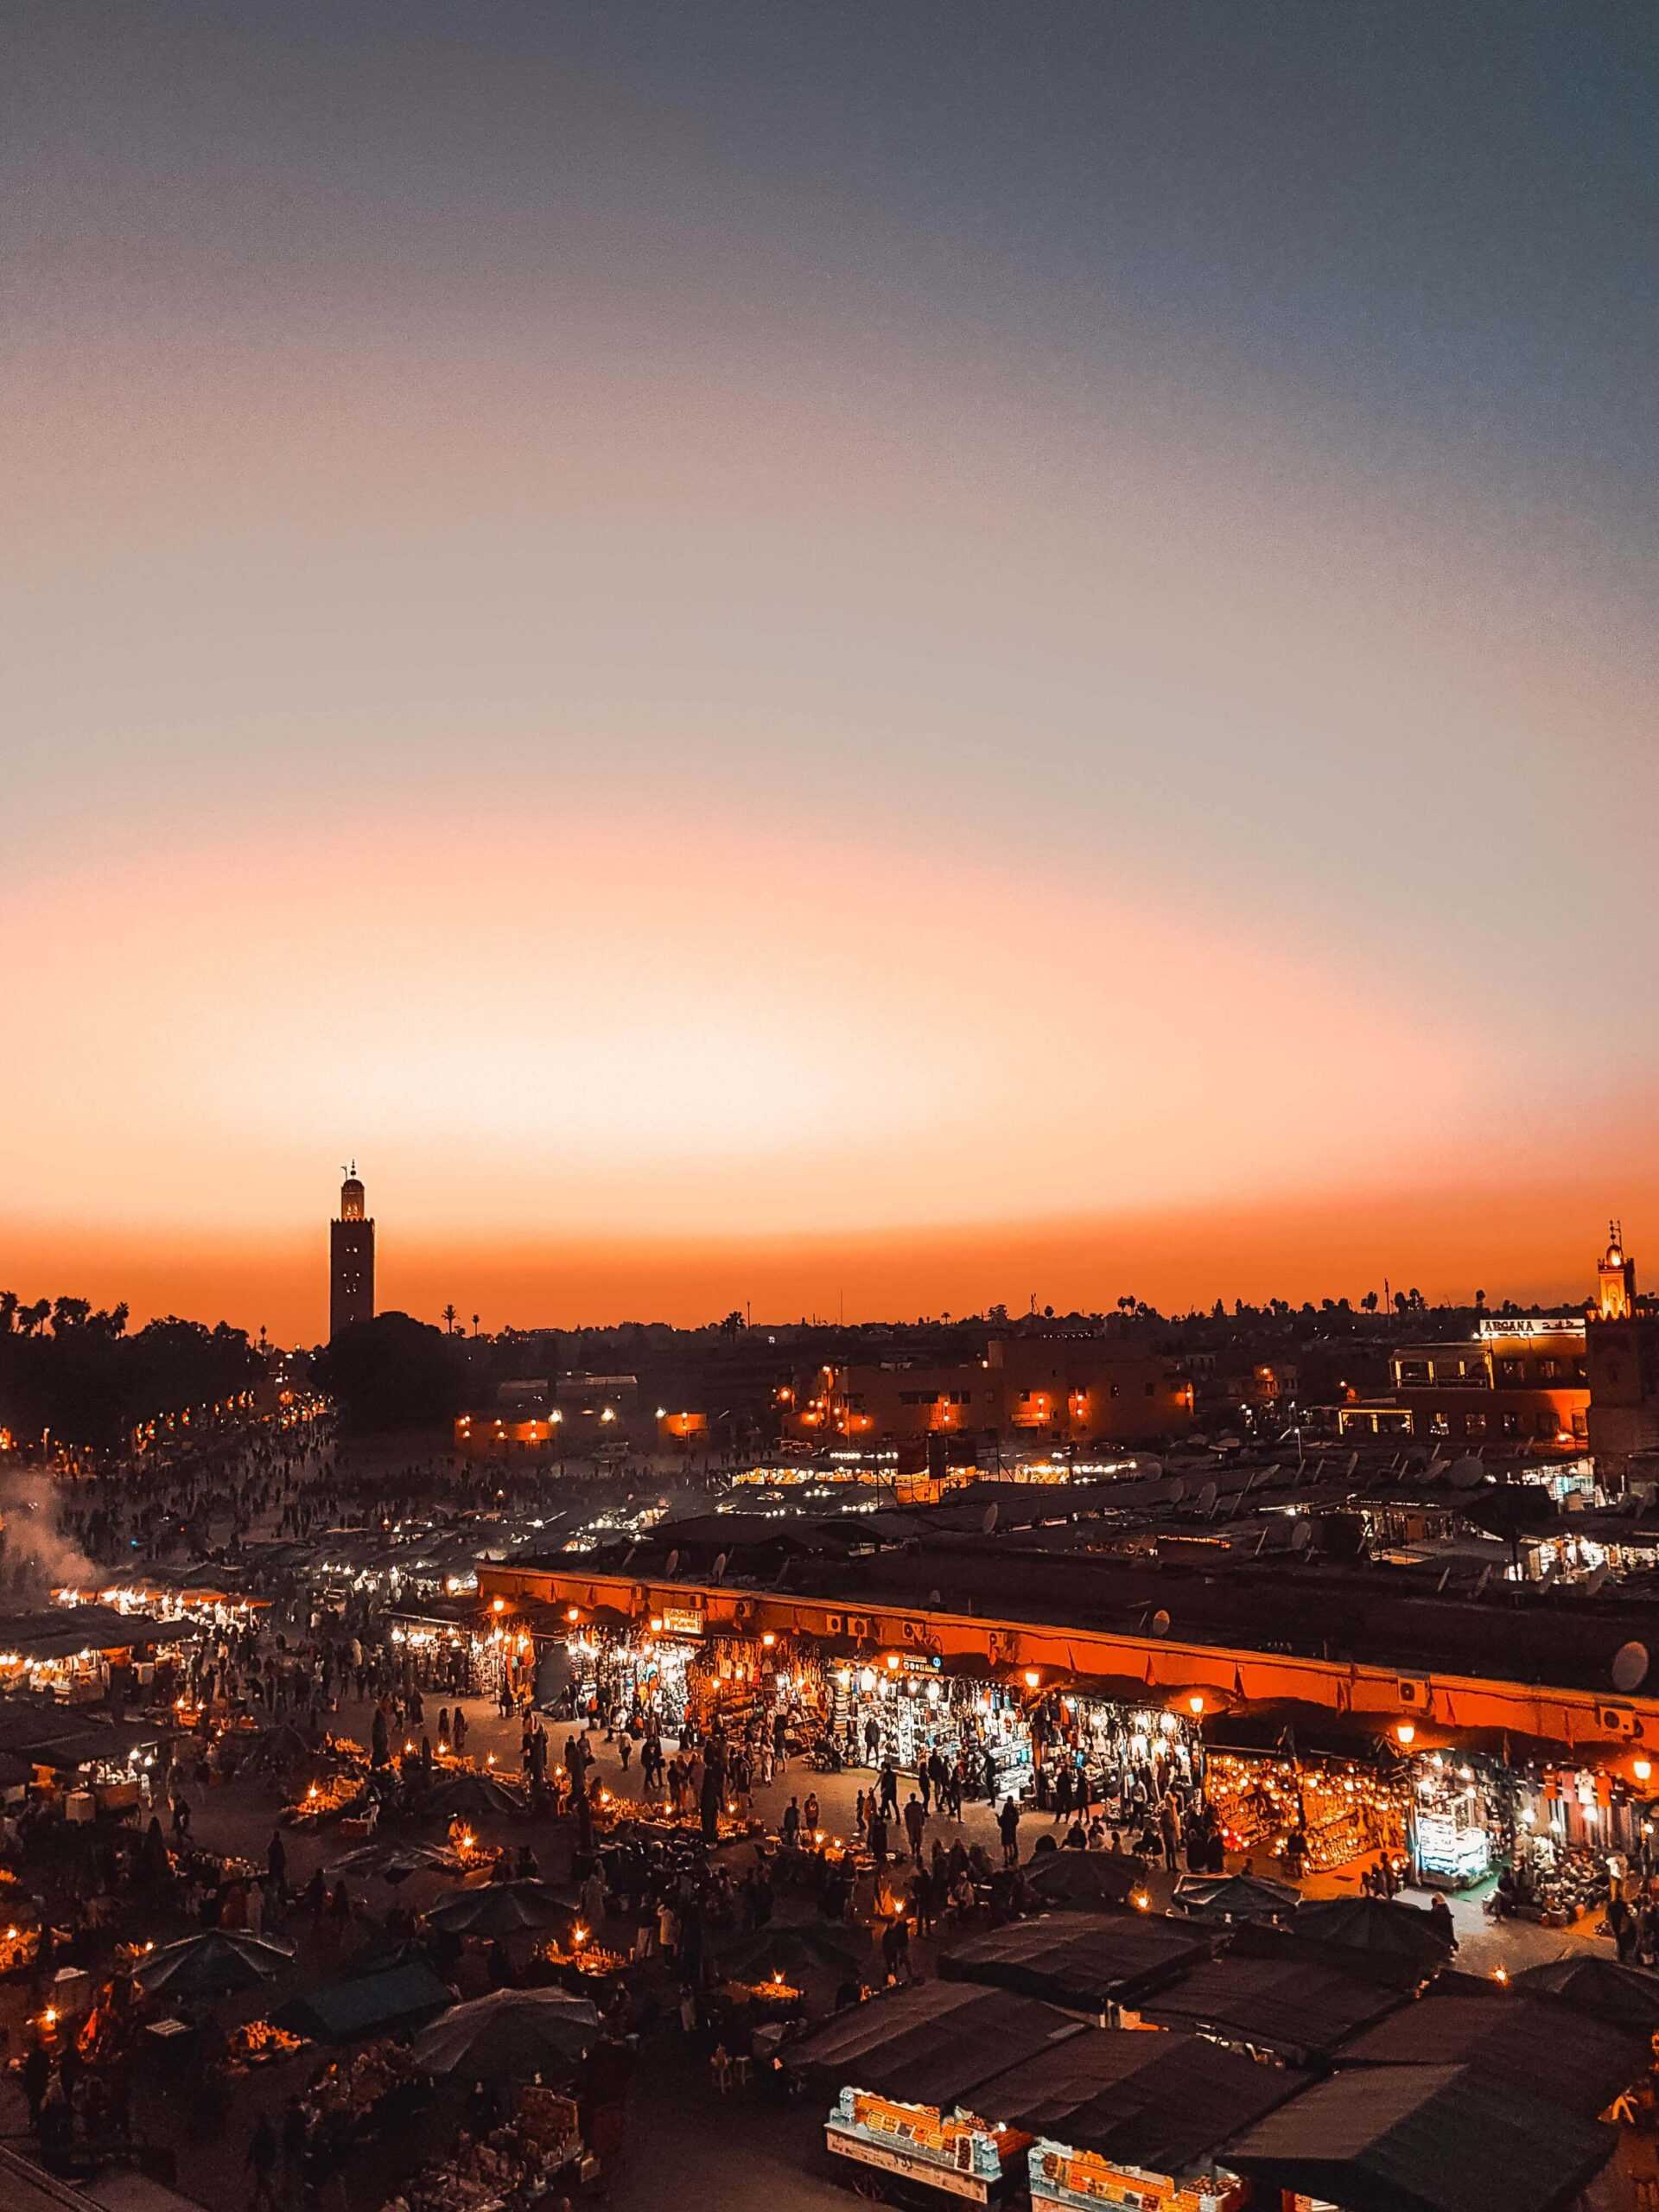 marrakesh or marrakech